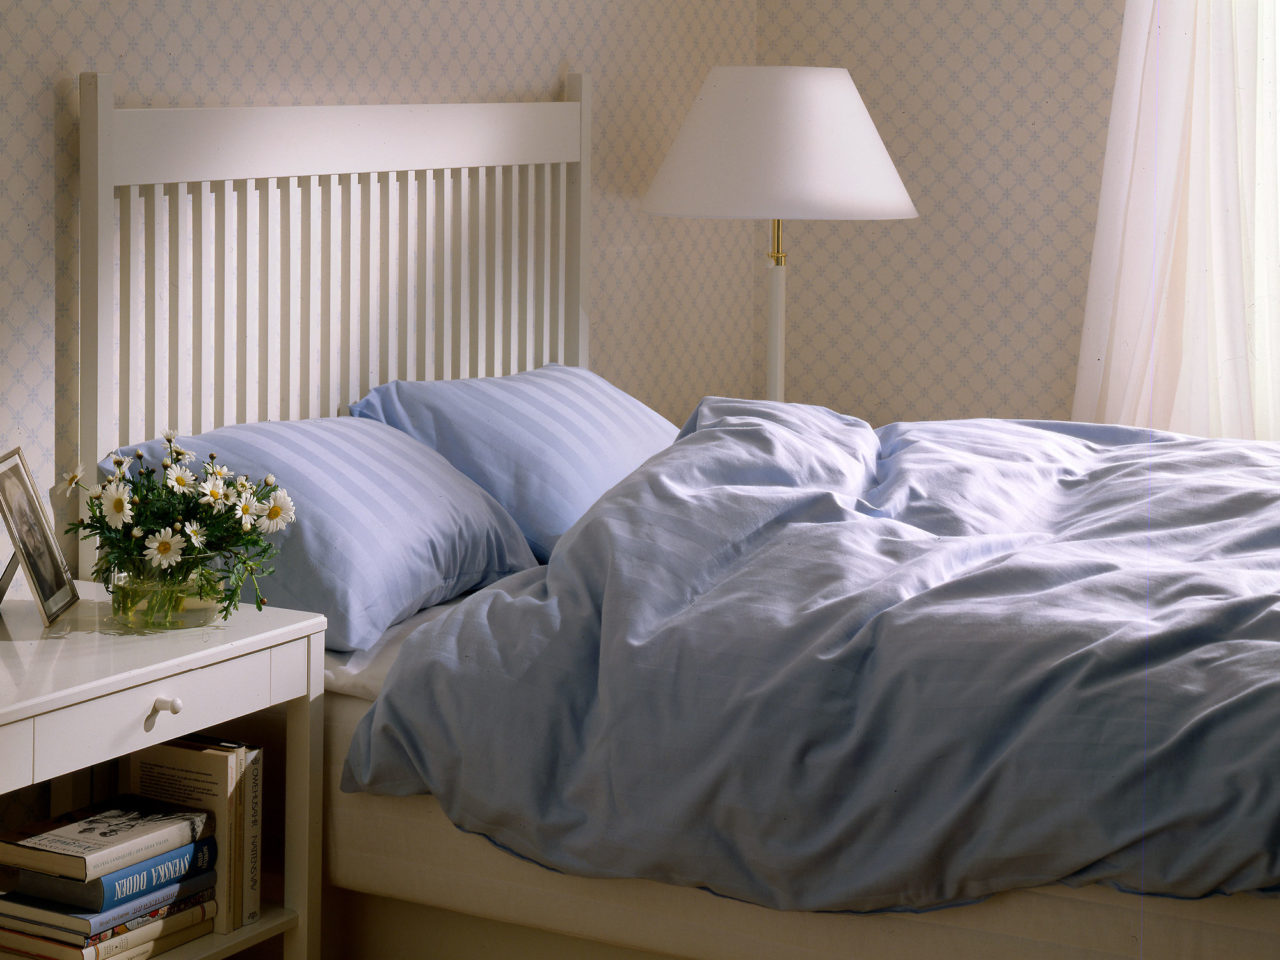 Schlafzimmer mit Möbeln und Details in Weißtönen. STOCKHOLM Doppelbett mit hohem Kopfteil und hellblauer Bettwäsche.